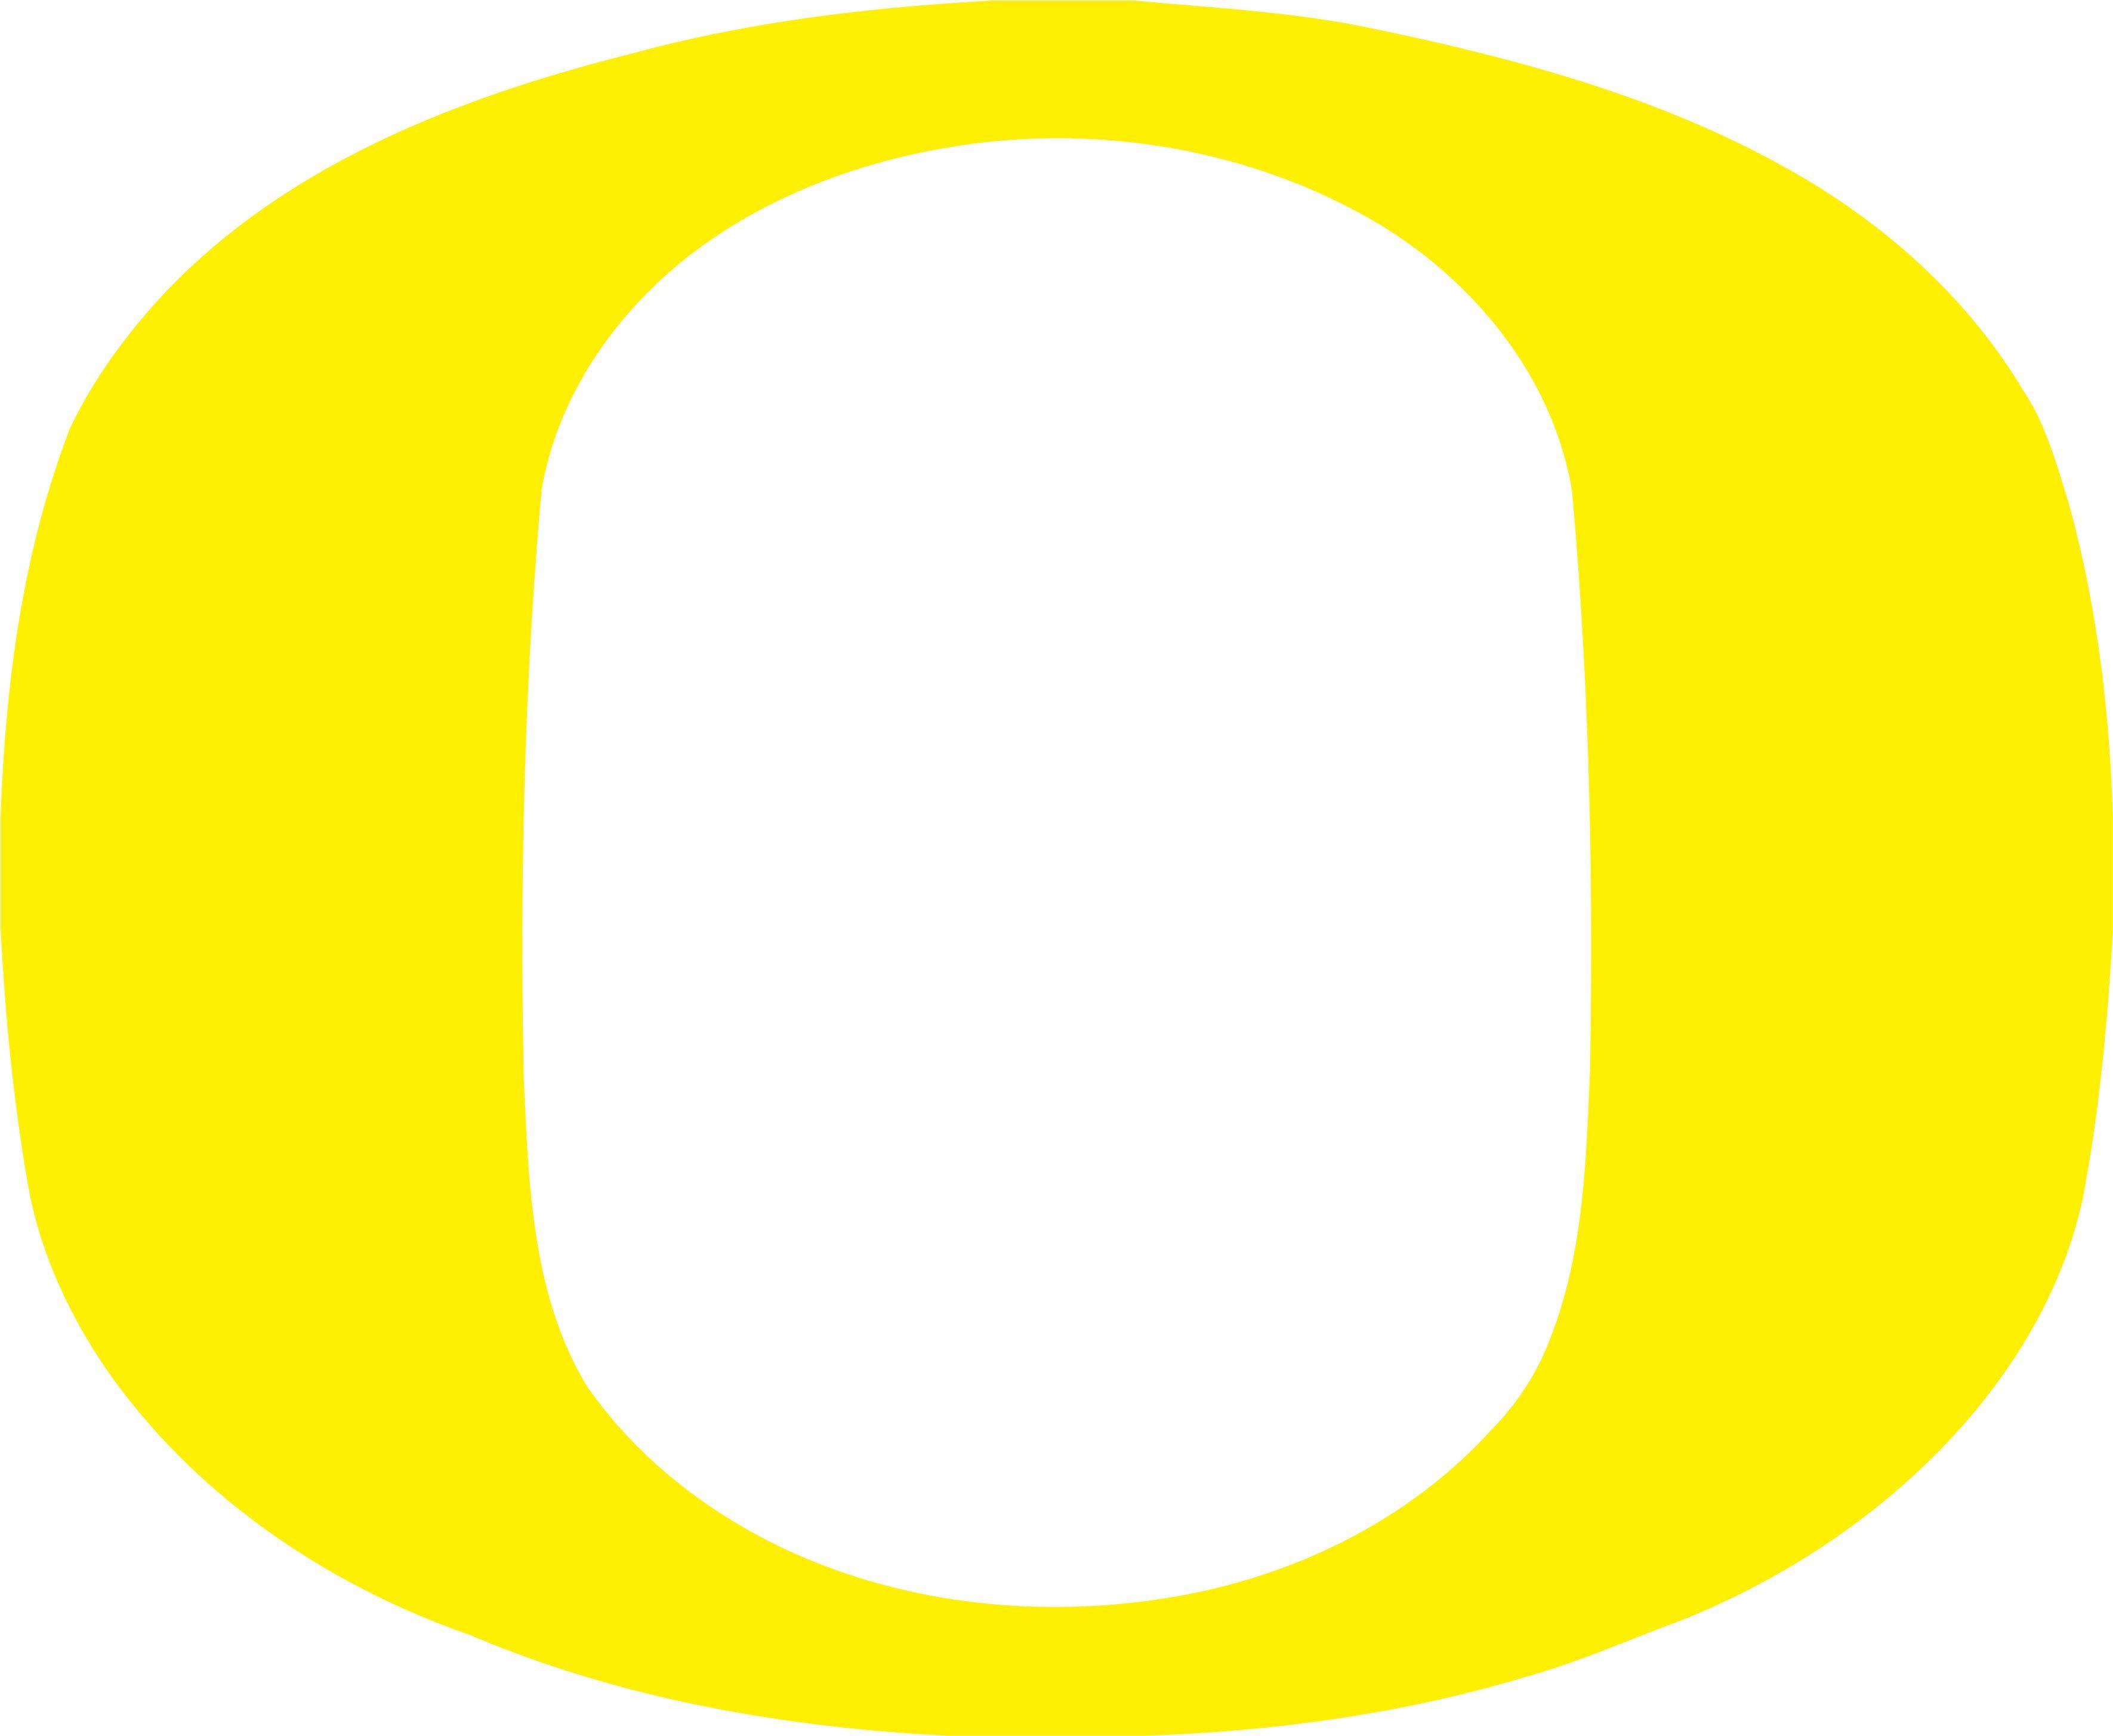 Oregon Logo - Oregon ducks Logos